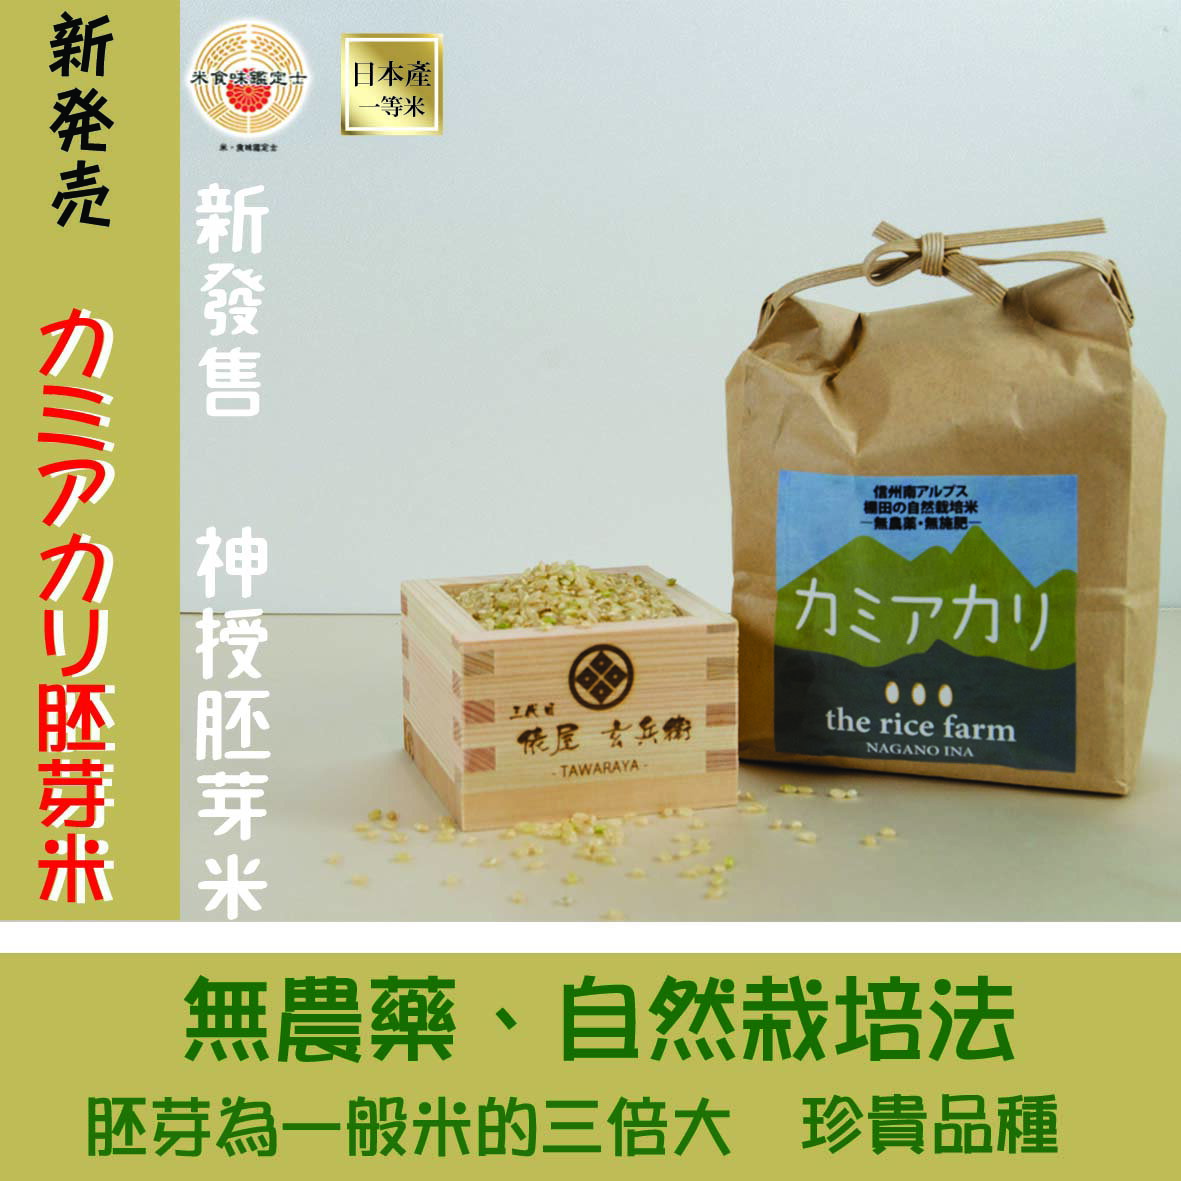 【新發售】神授胚芽米♪ 一公斤 日本米 胚芽米 俵屋 低GI飲食 ❤️❤️2023年產新米入庫囉！！！❤️❤️過年 年節禮盒 送禮